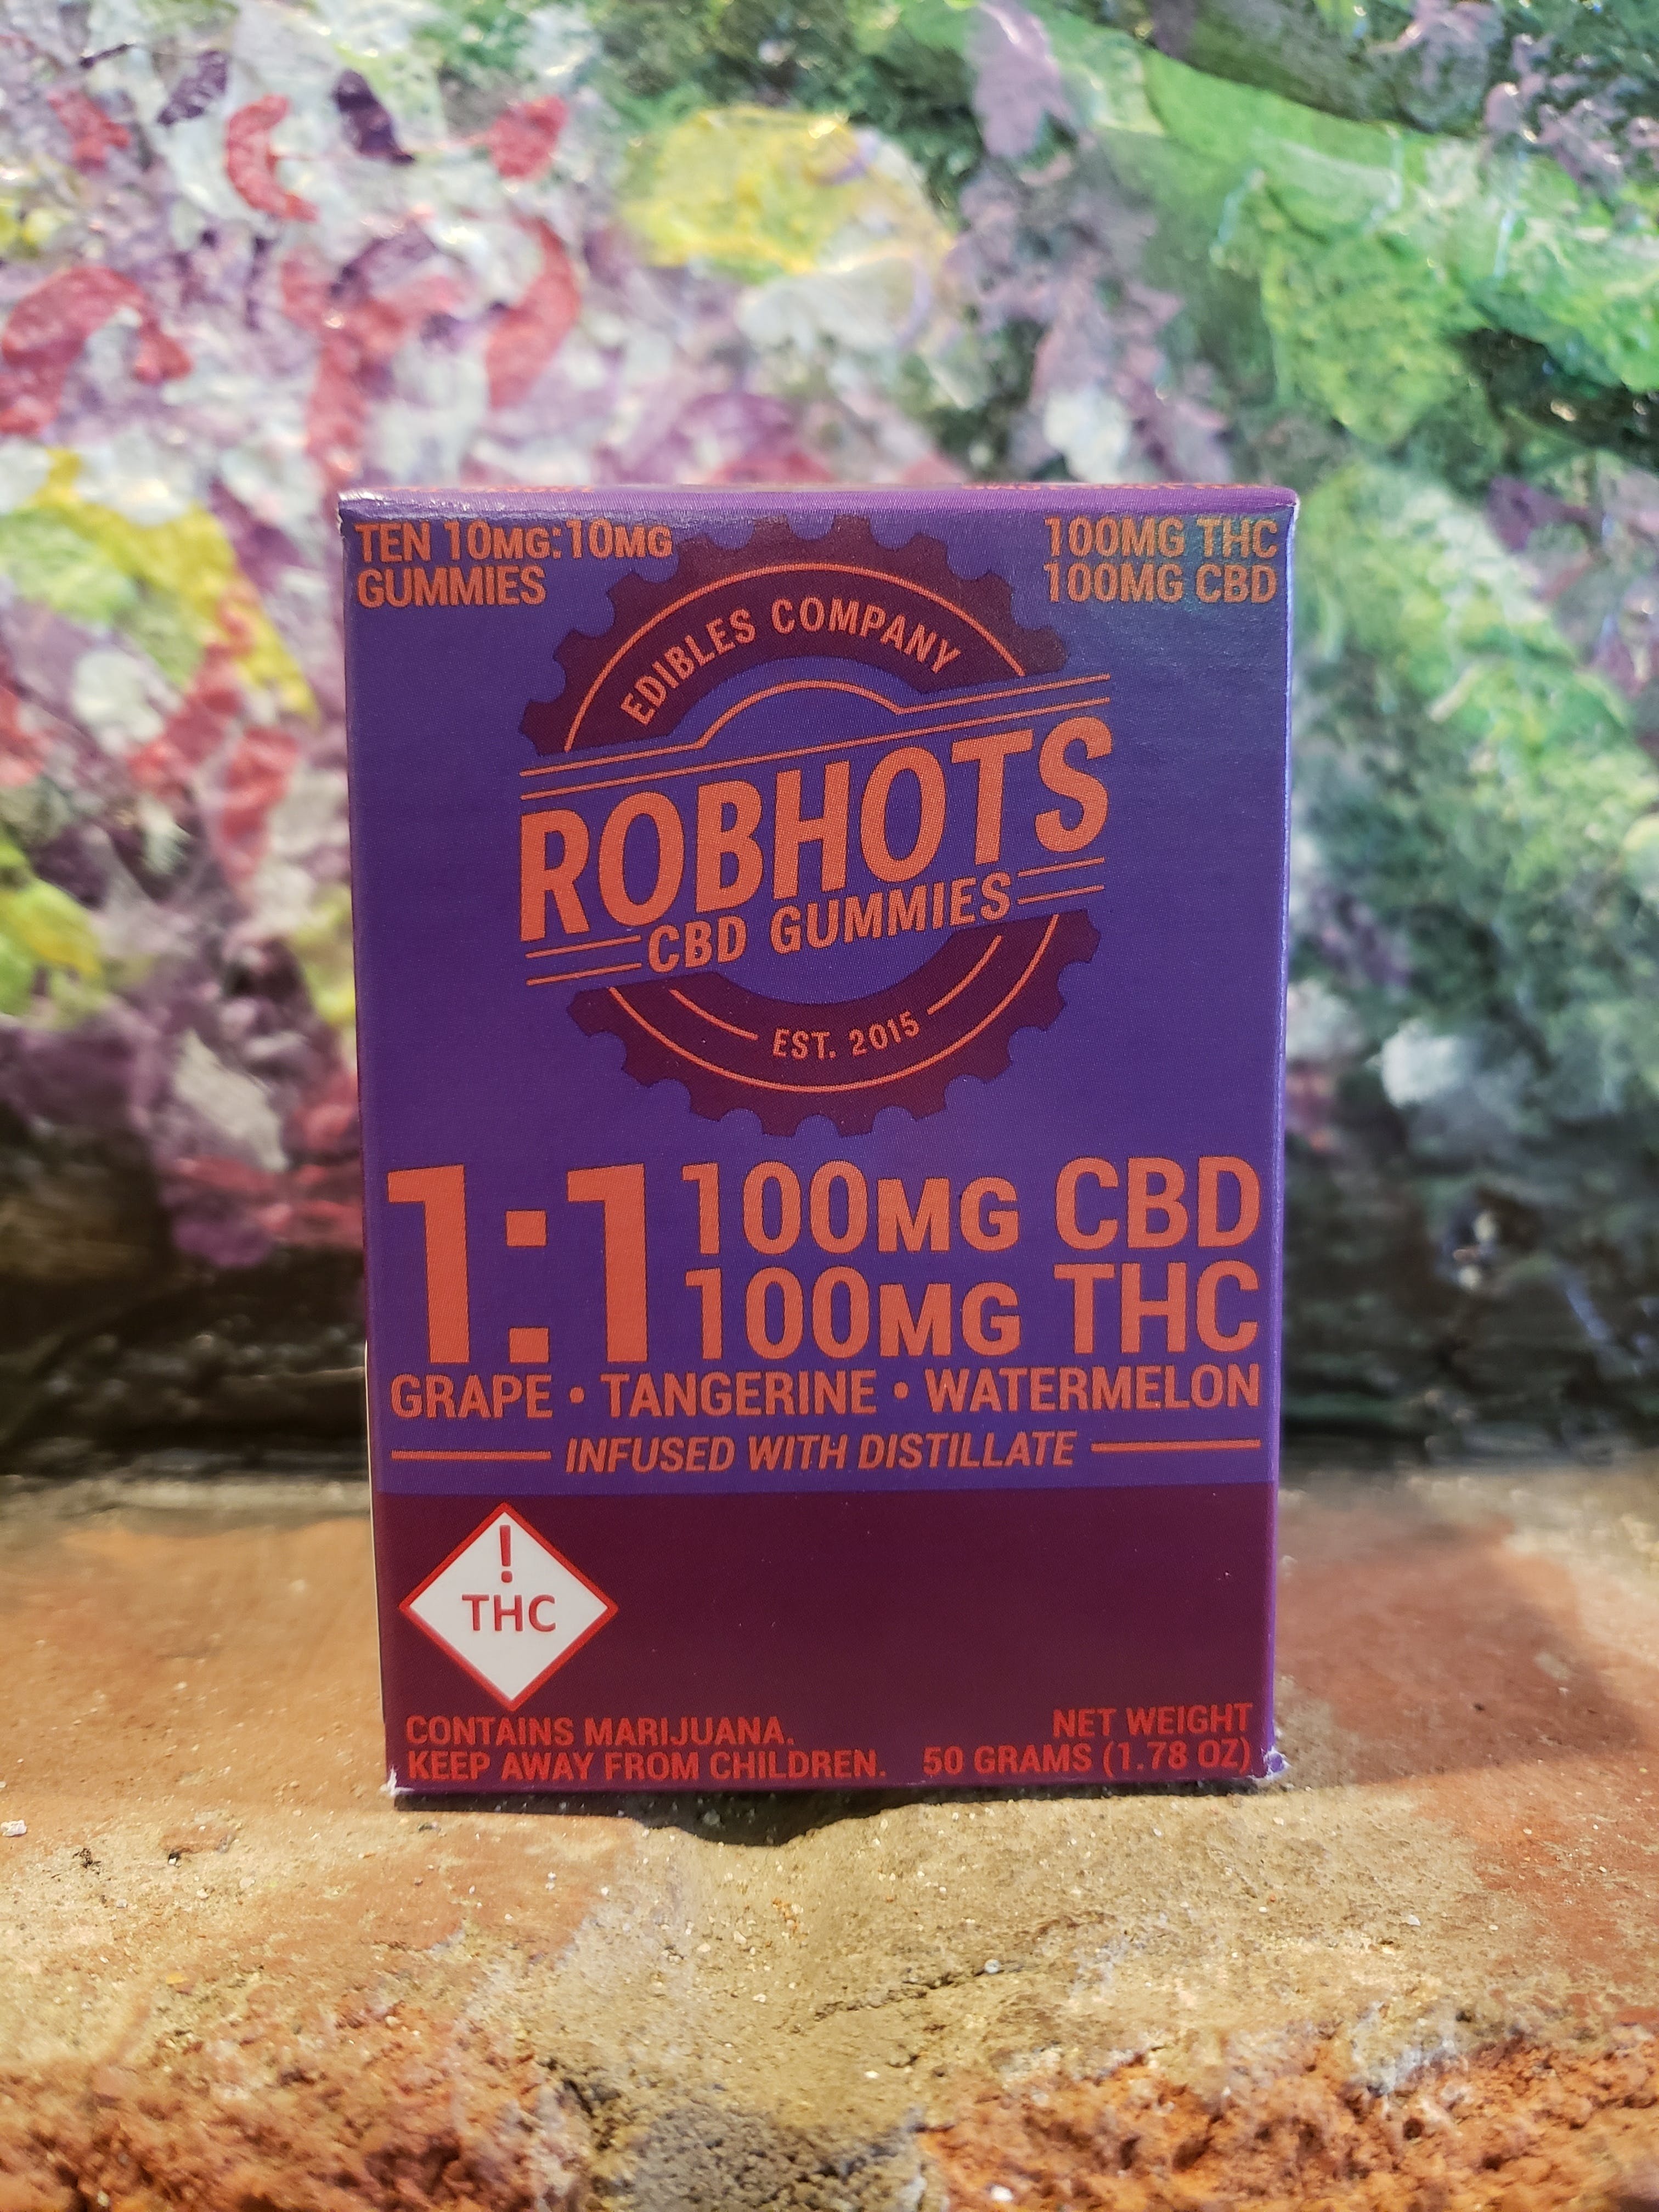 edible-robhots-cbd-gummies-11-100mg-each